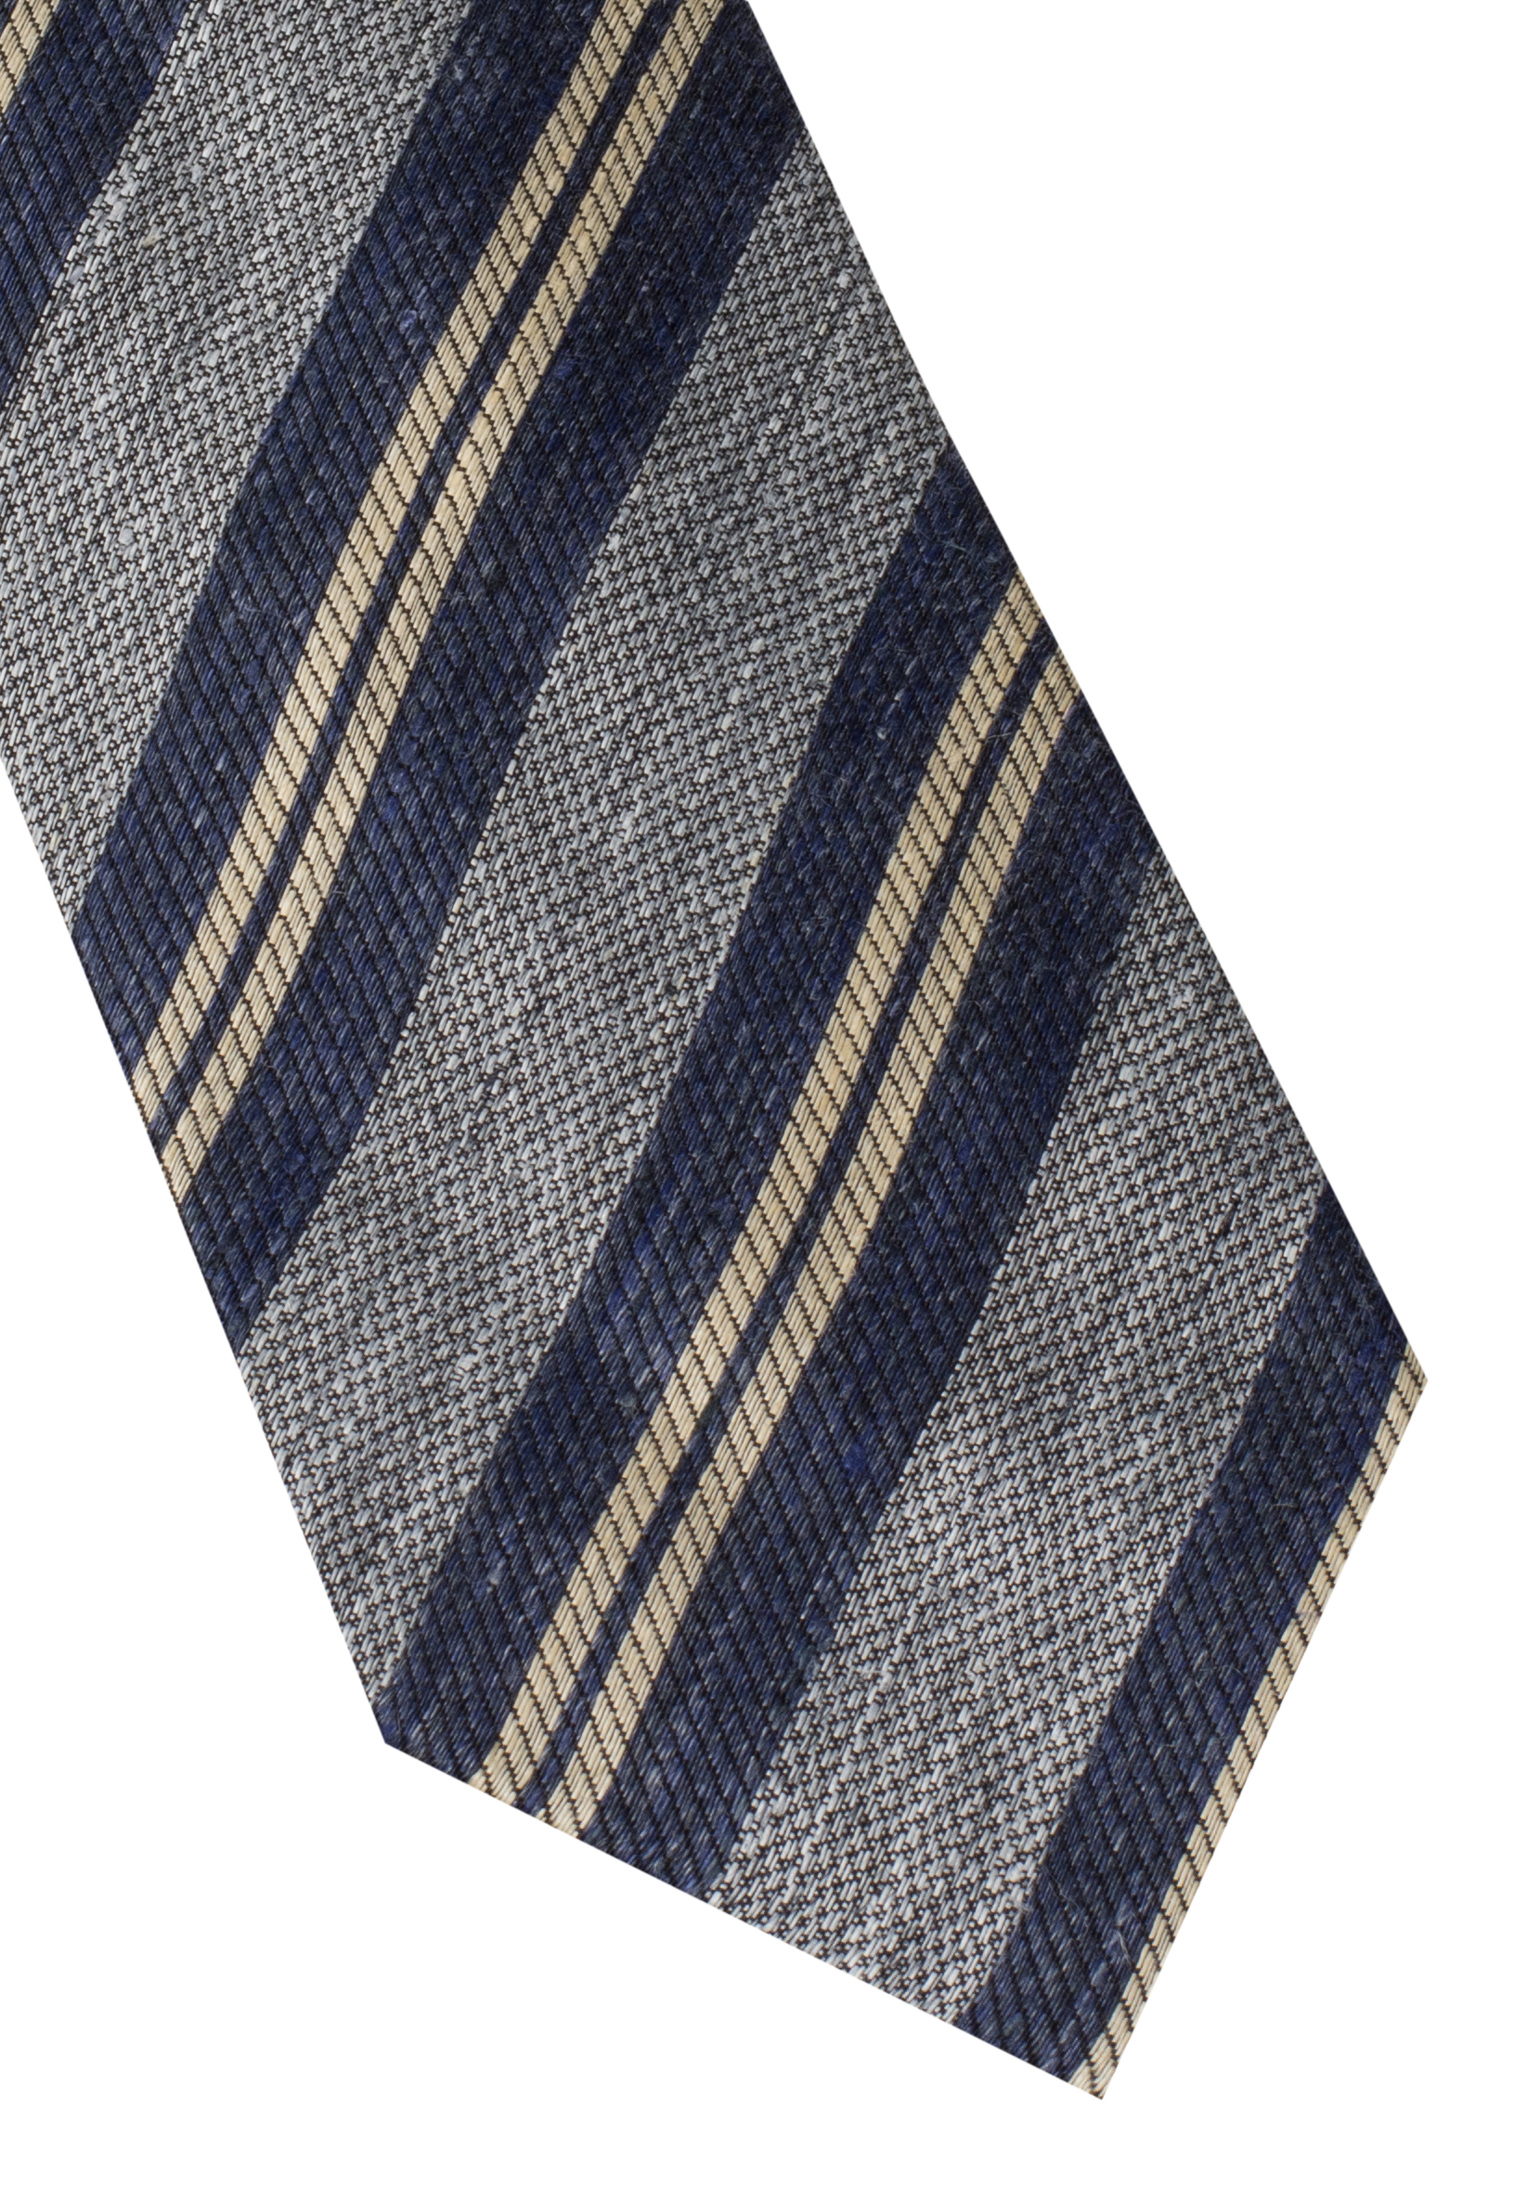 Cravate bleu rayé